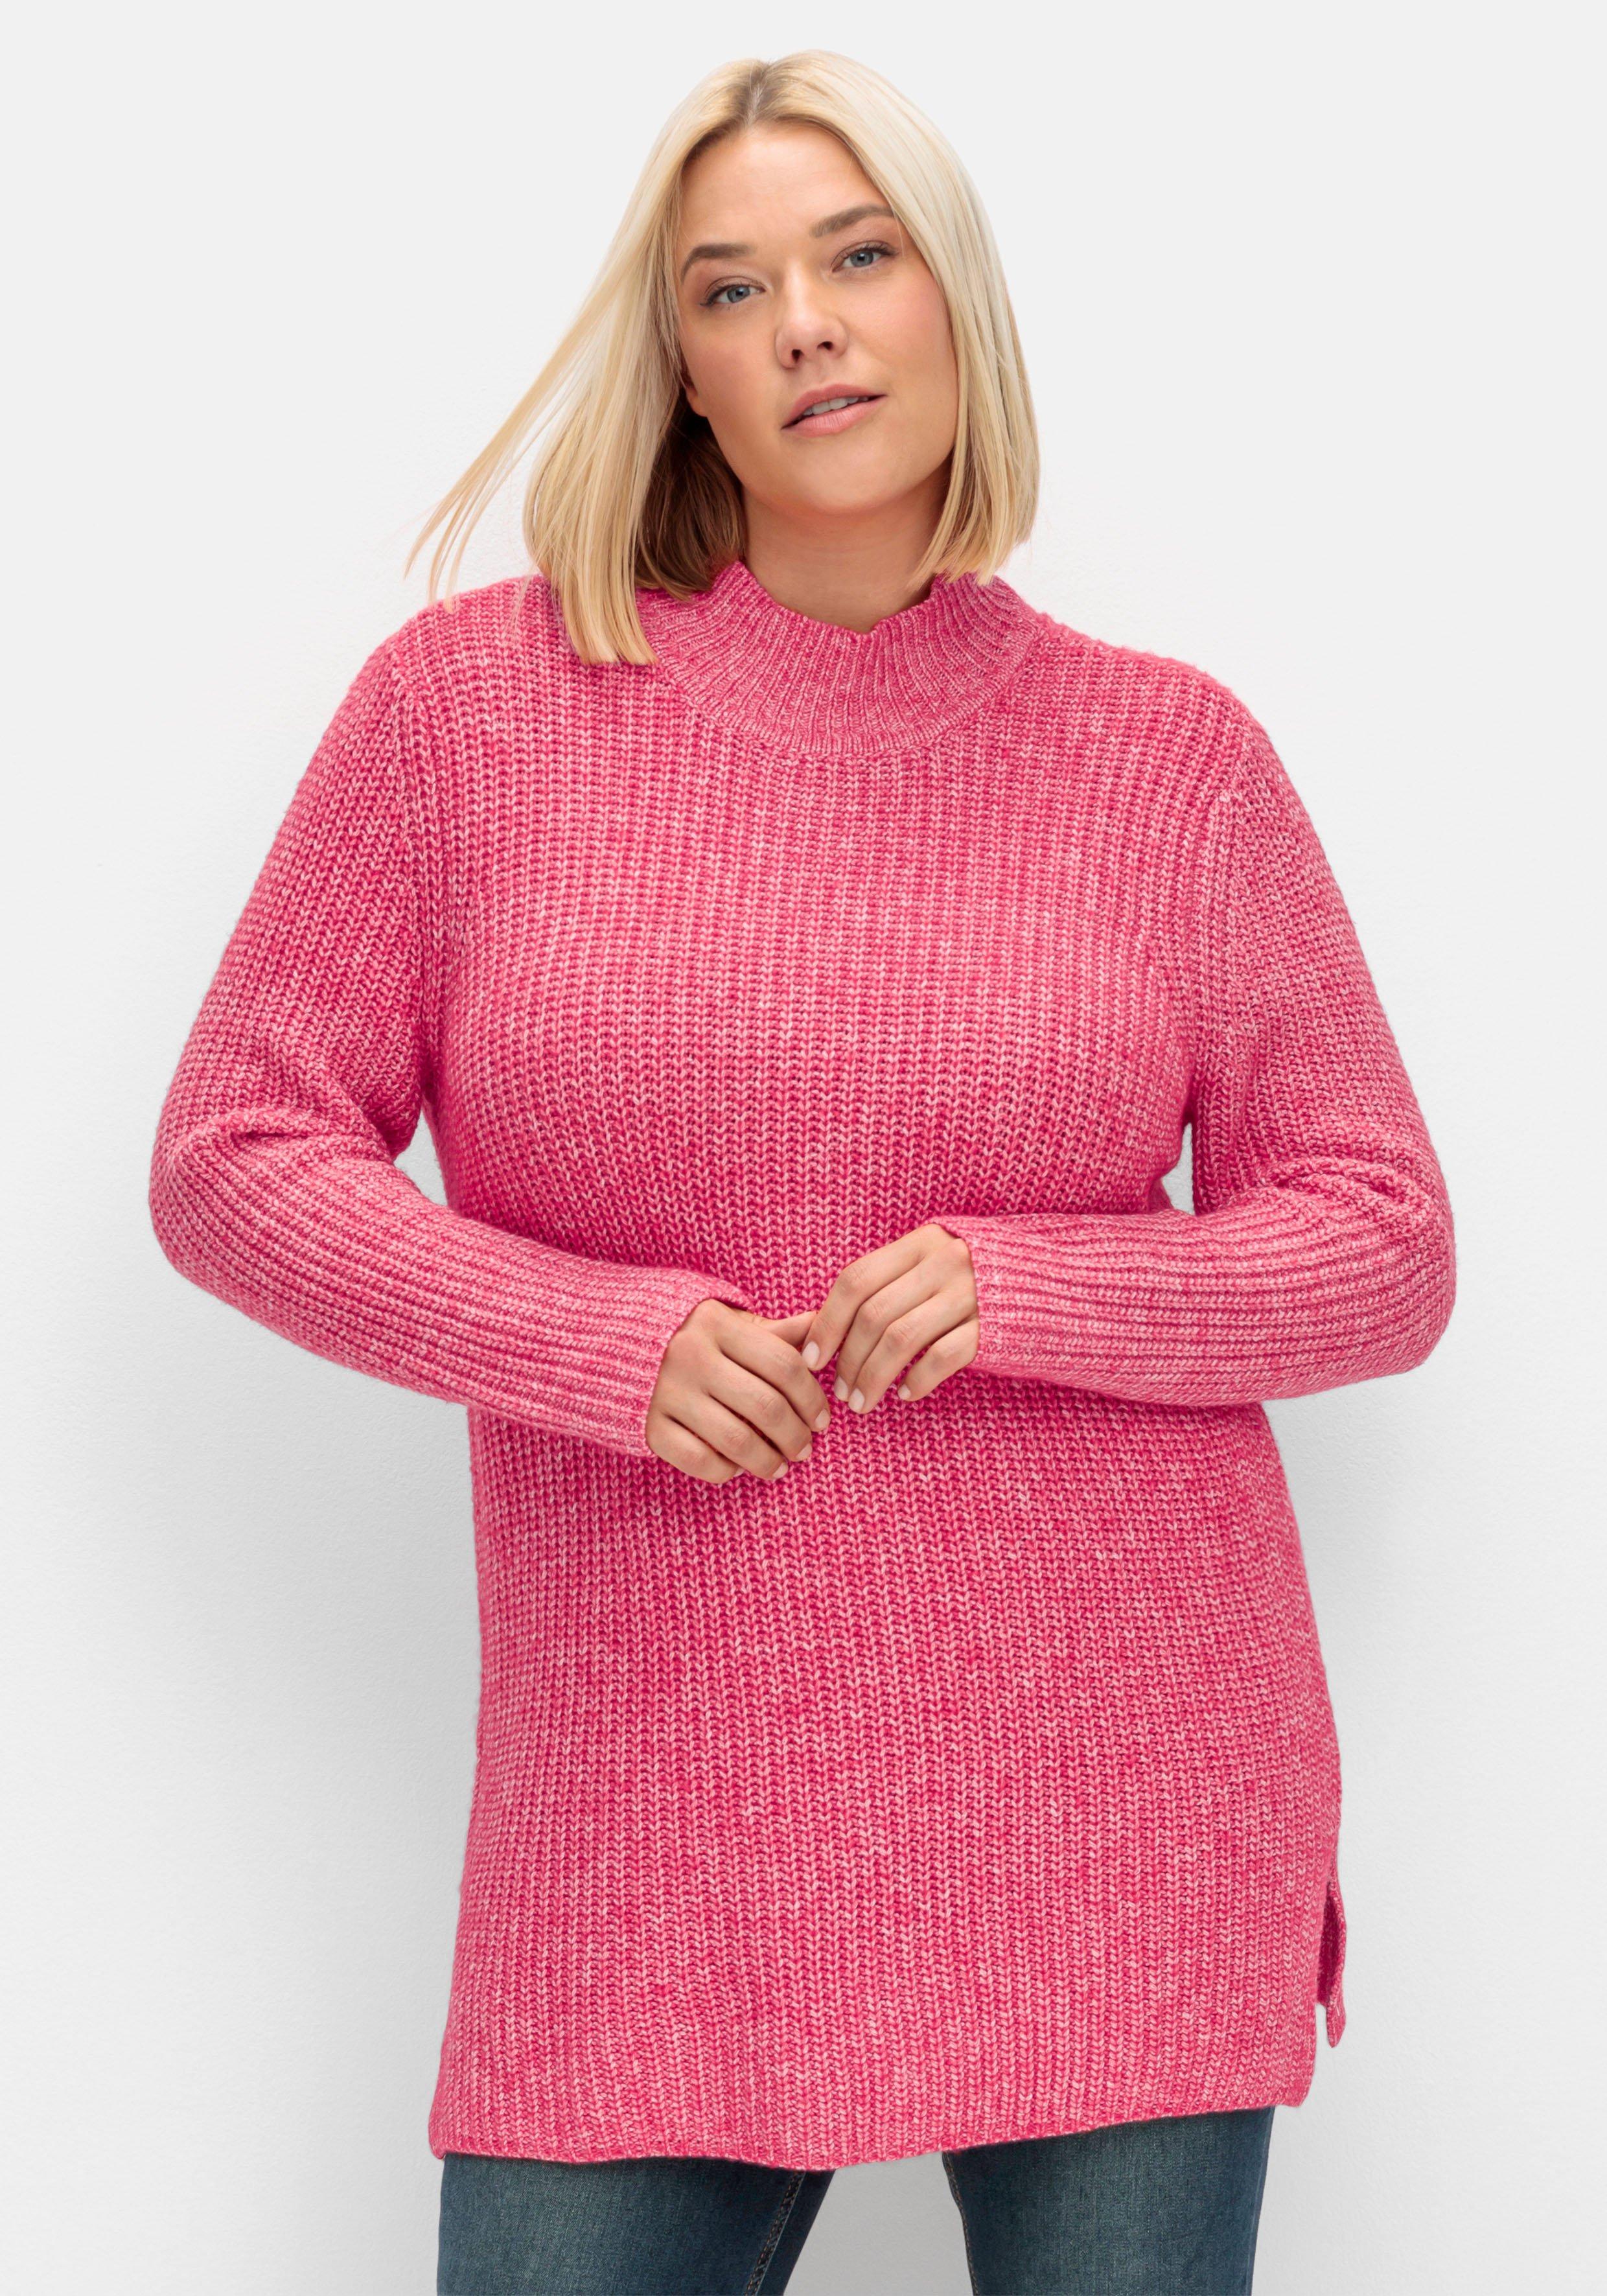 Stehkragen, Patentstrick - im pink Pullover mit sheego |